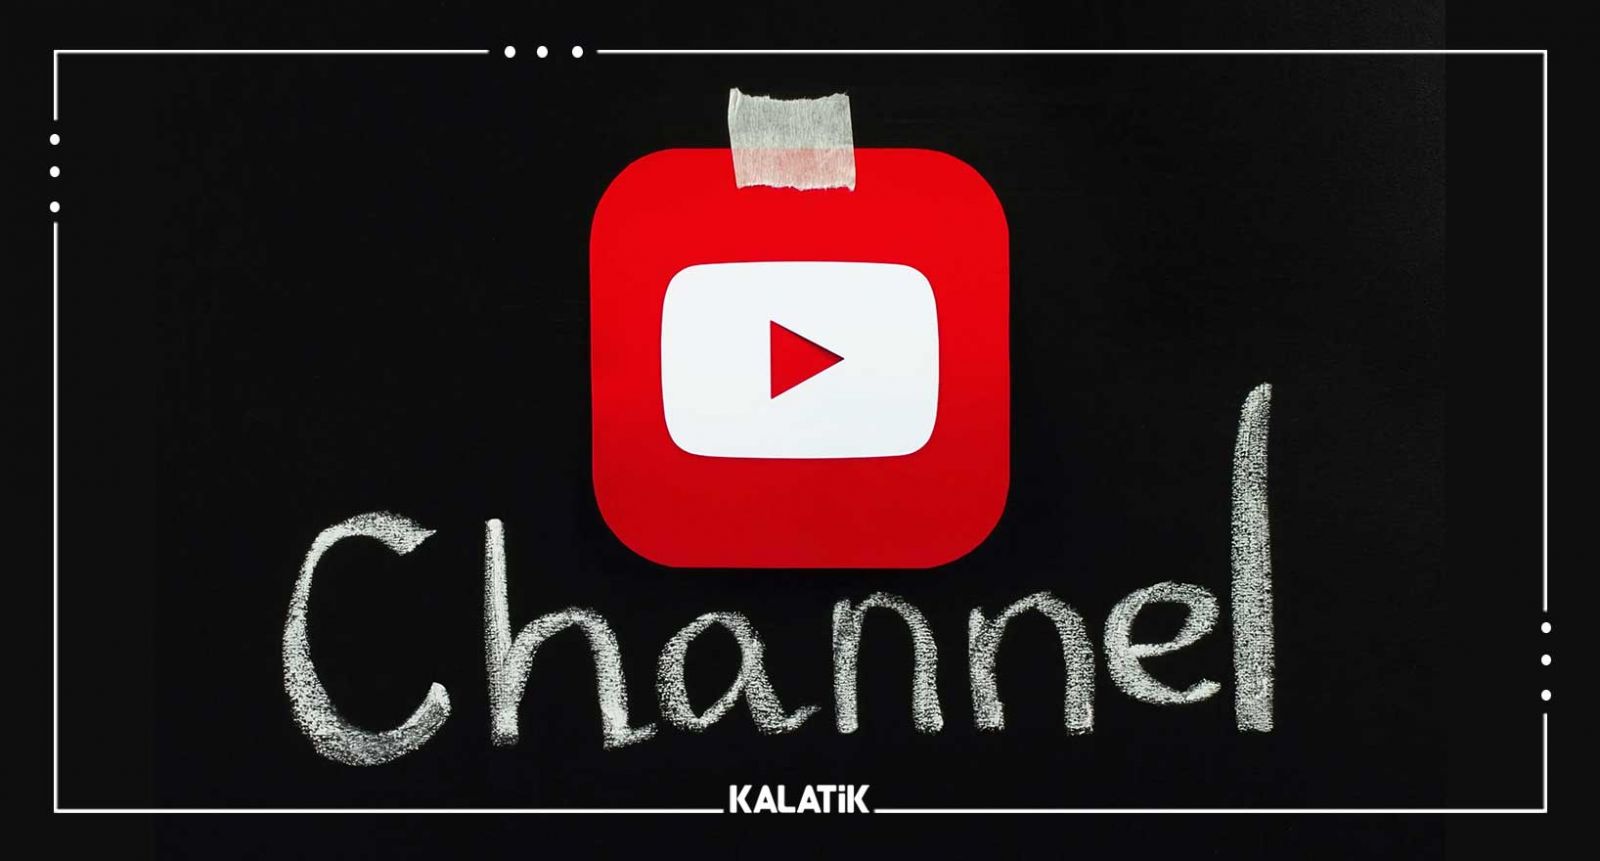 آموزش ساخت کانال یوتیوب